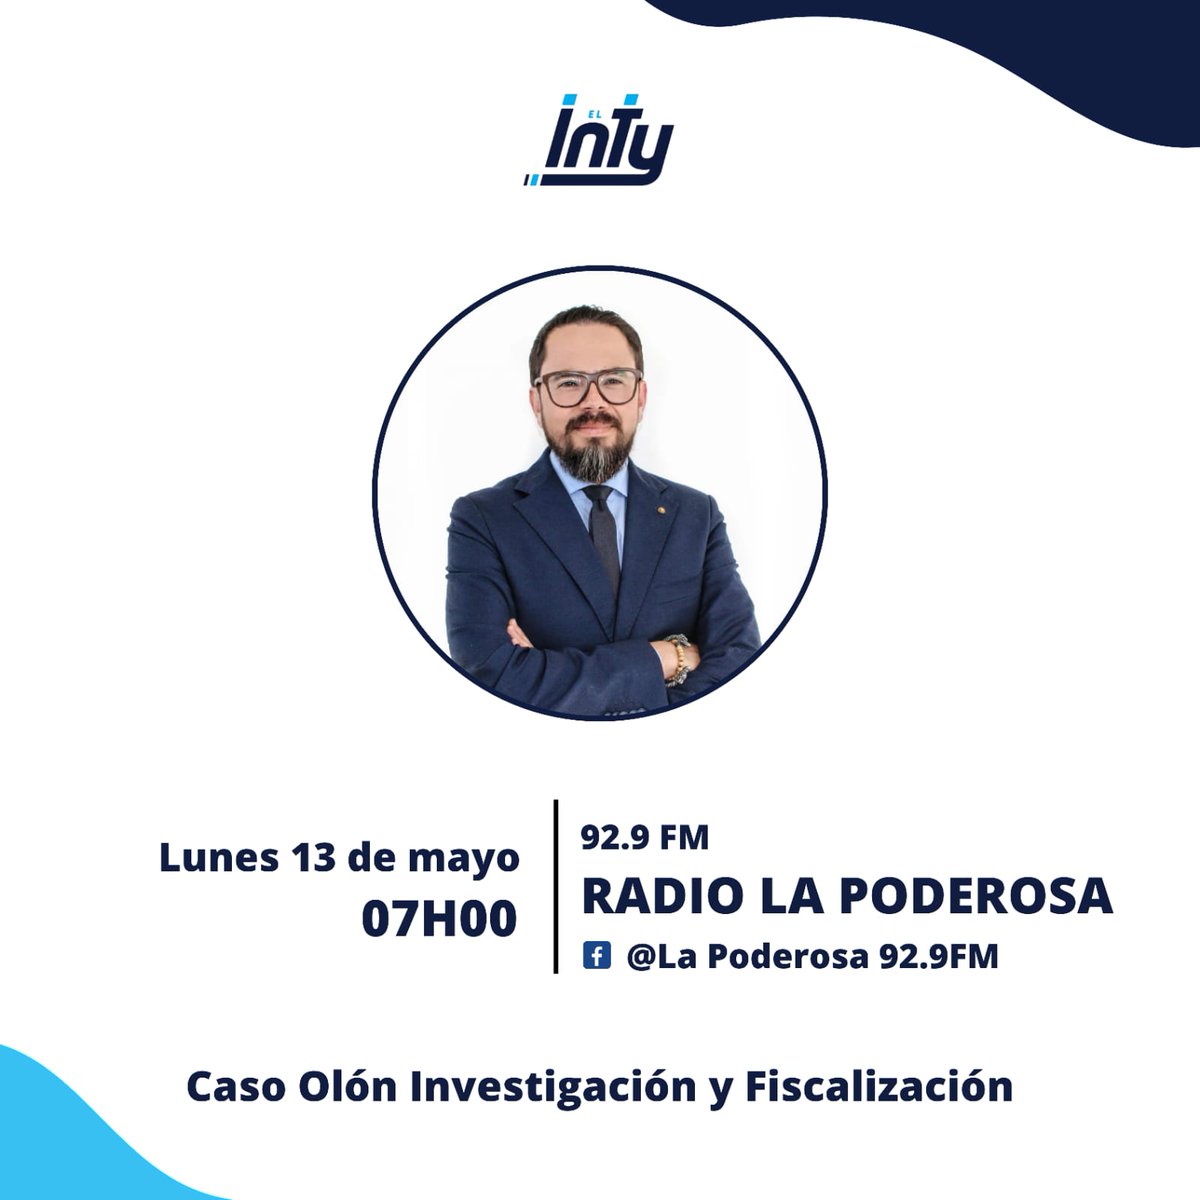 Investigaciones y fiscalización en el caso #Olón: ¿qué sucederá después de las declaraciones de la empresa Vinazin S.A.? Acompáñanos por radio @LaPoderosaEc 92.9FM a las 7H00 para abordar este tema.